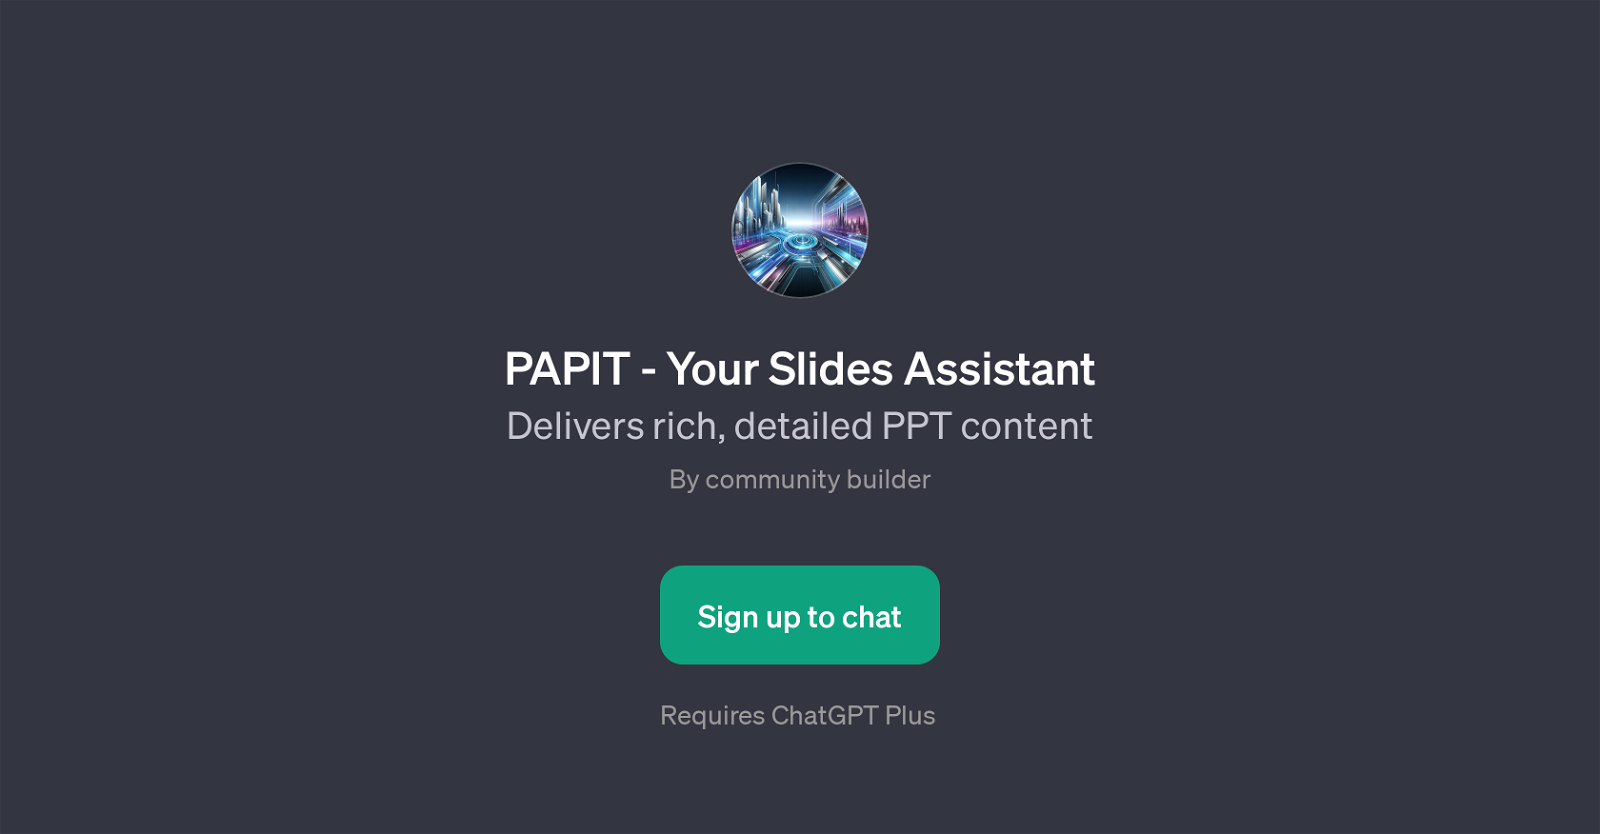 PAPIT - Your Slides Assistant website